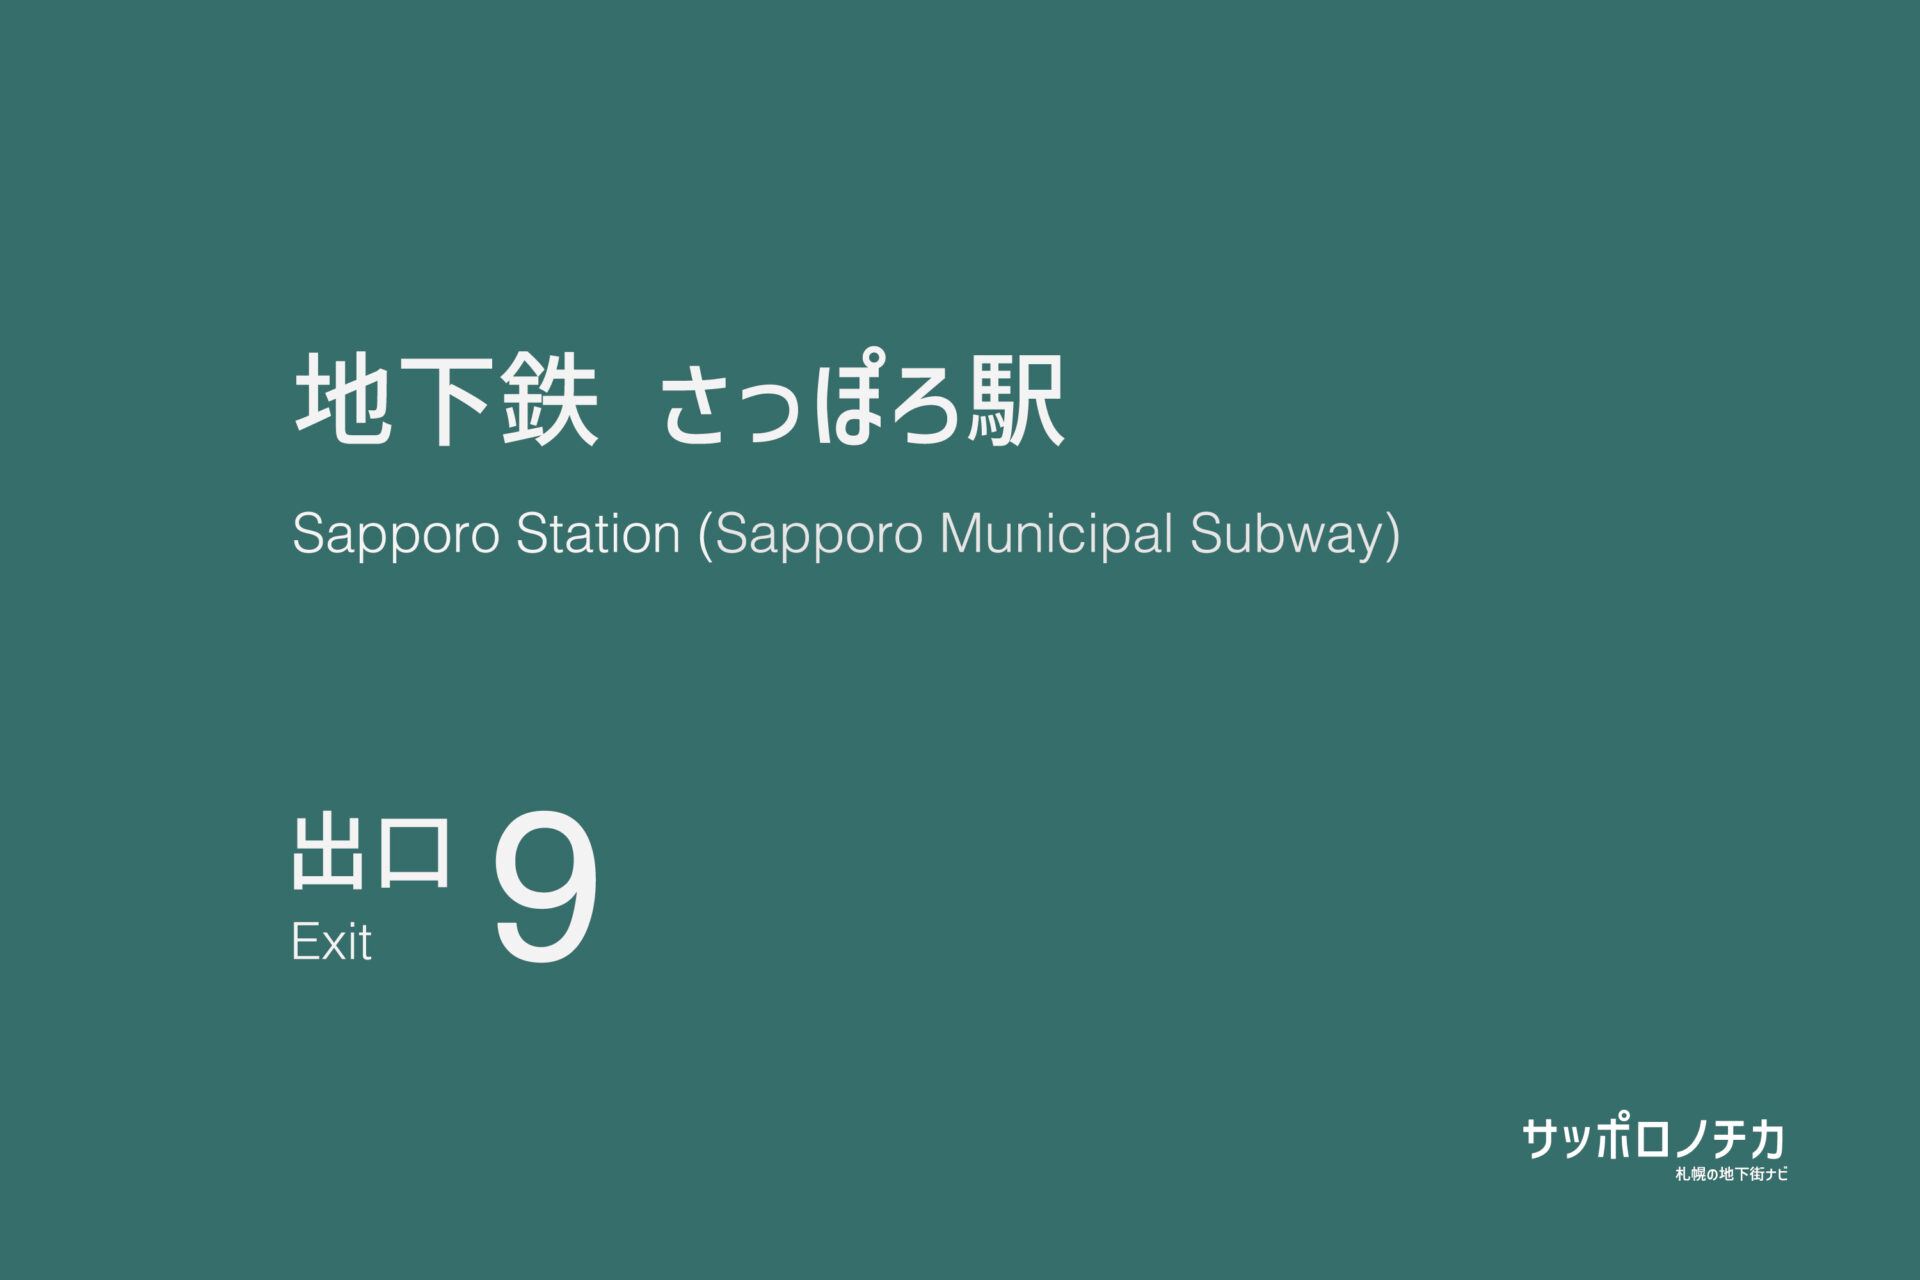 札幌市営地下鉄南北線・東豊線「さっぽろ駅」9番出口